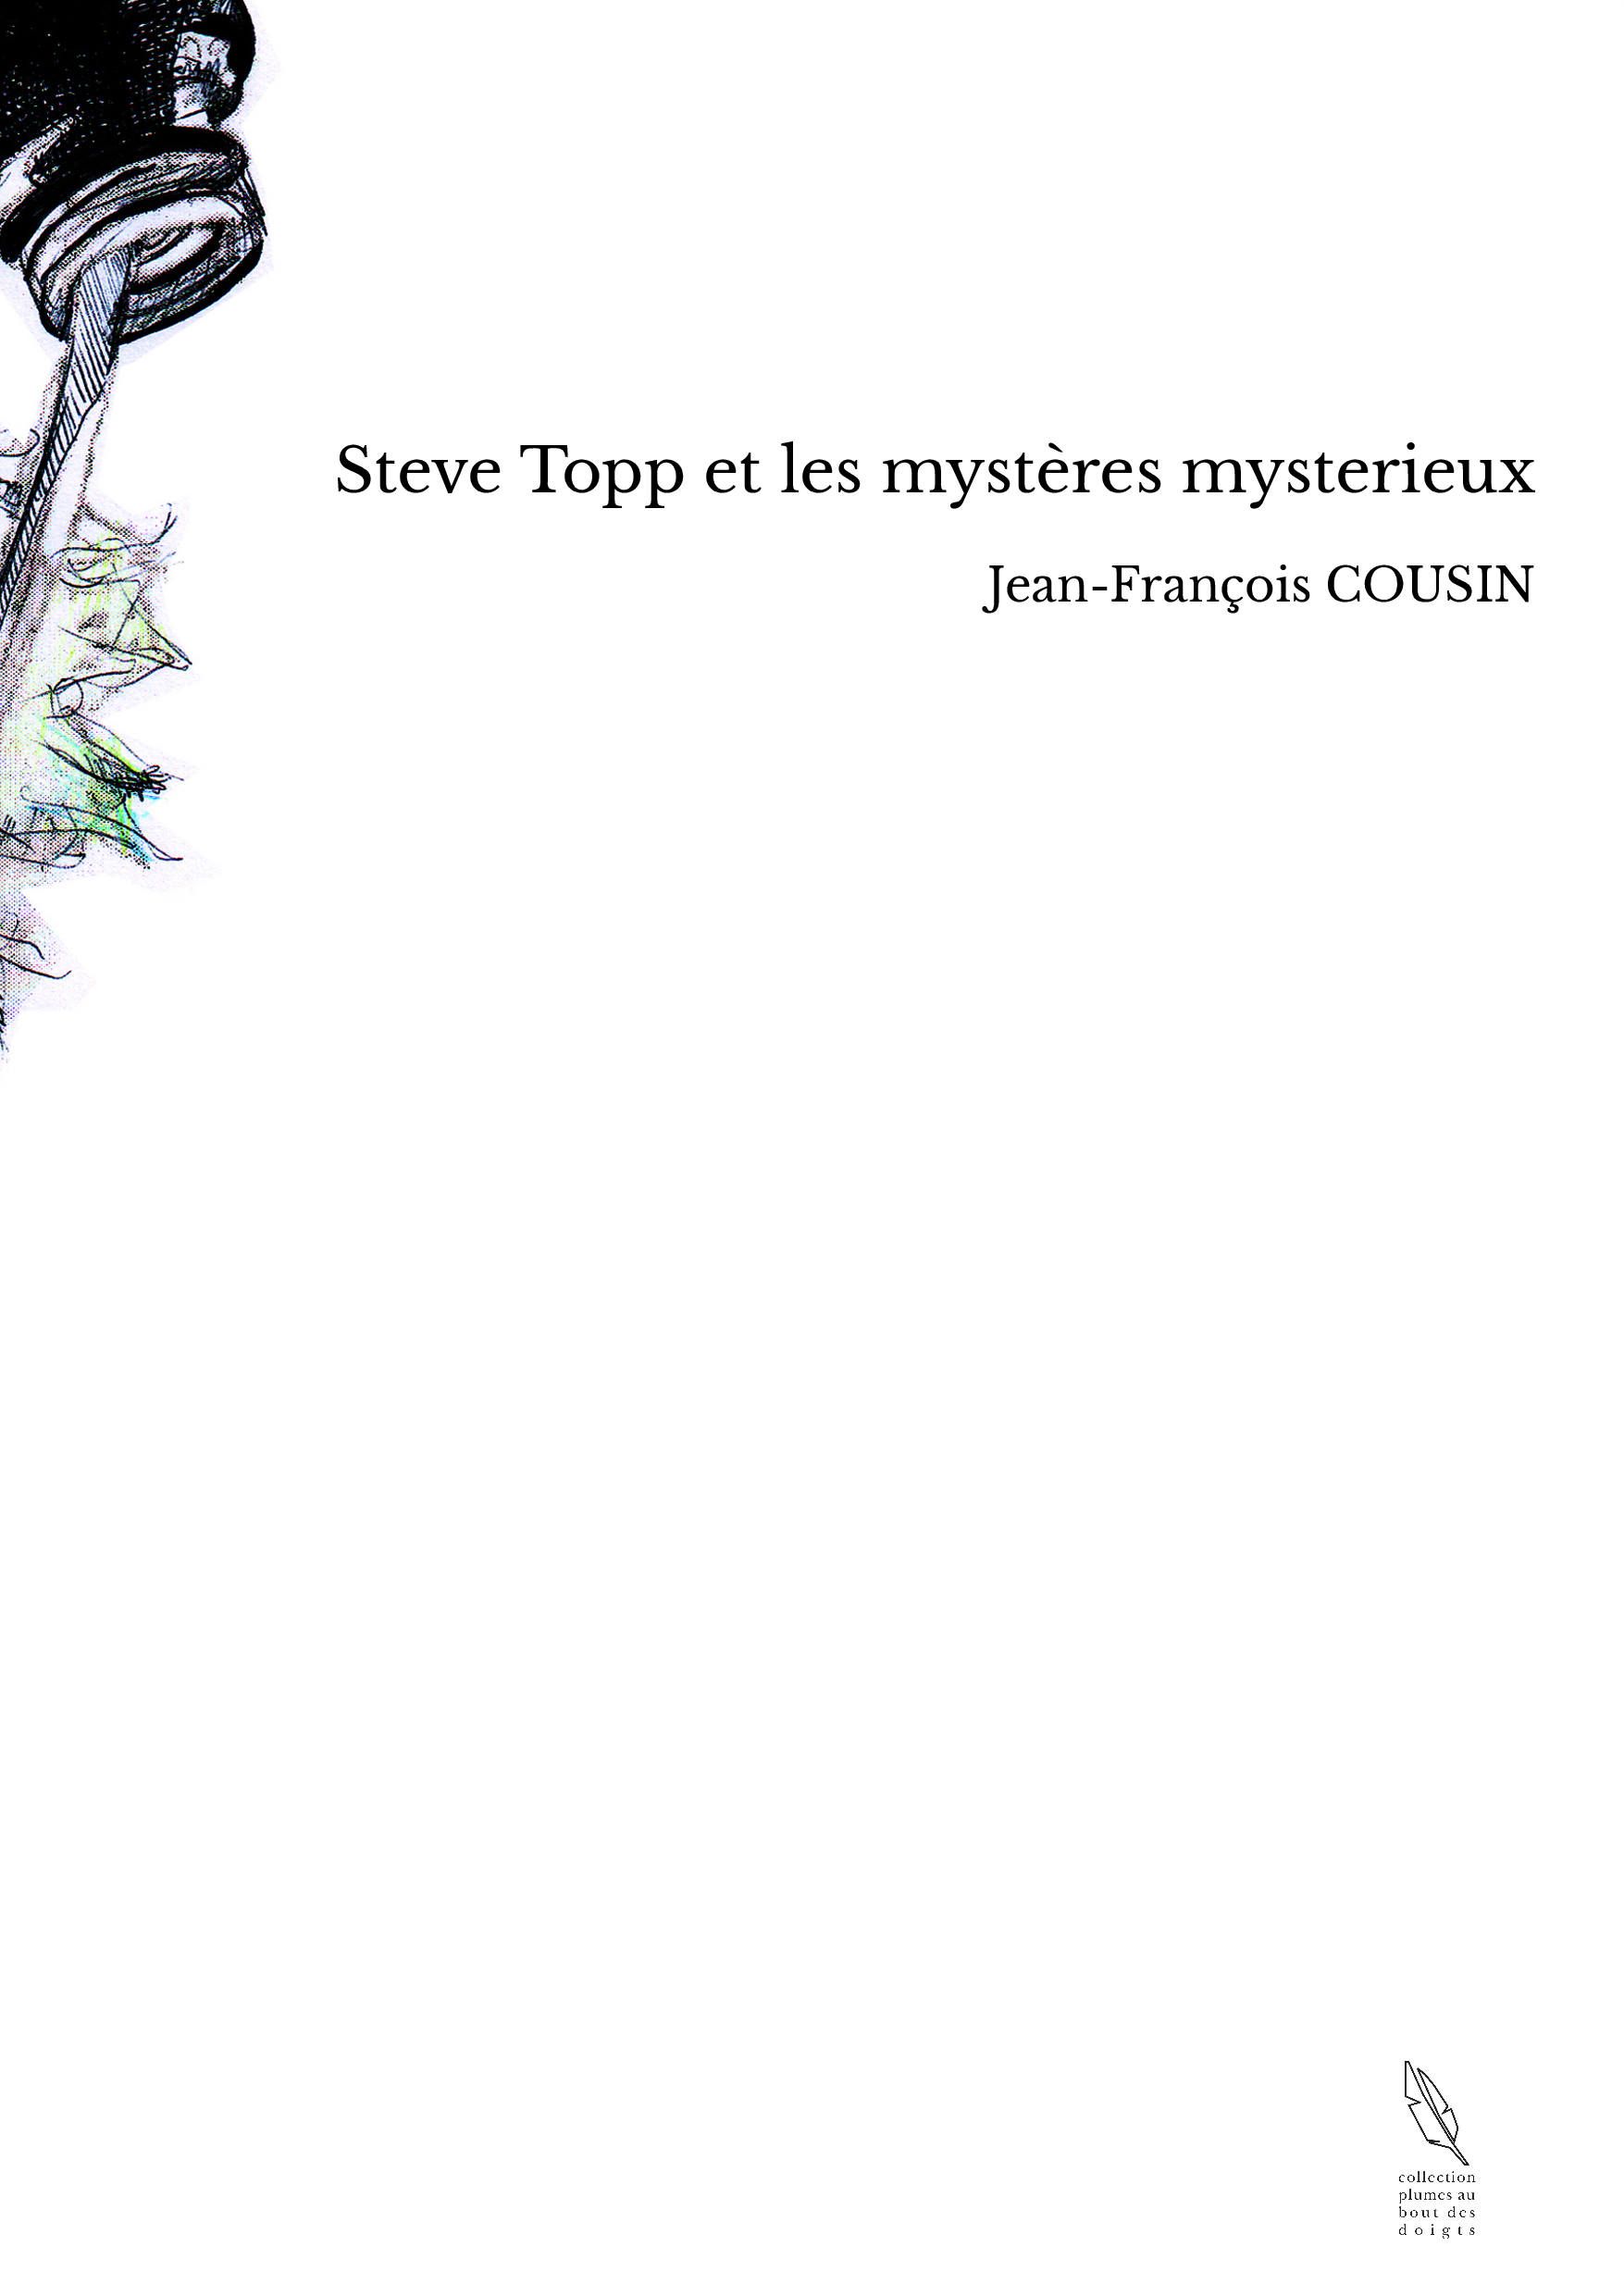 Steve Topp et les mystères mysterieux